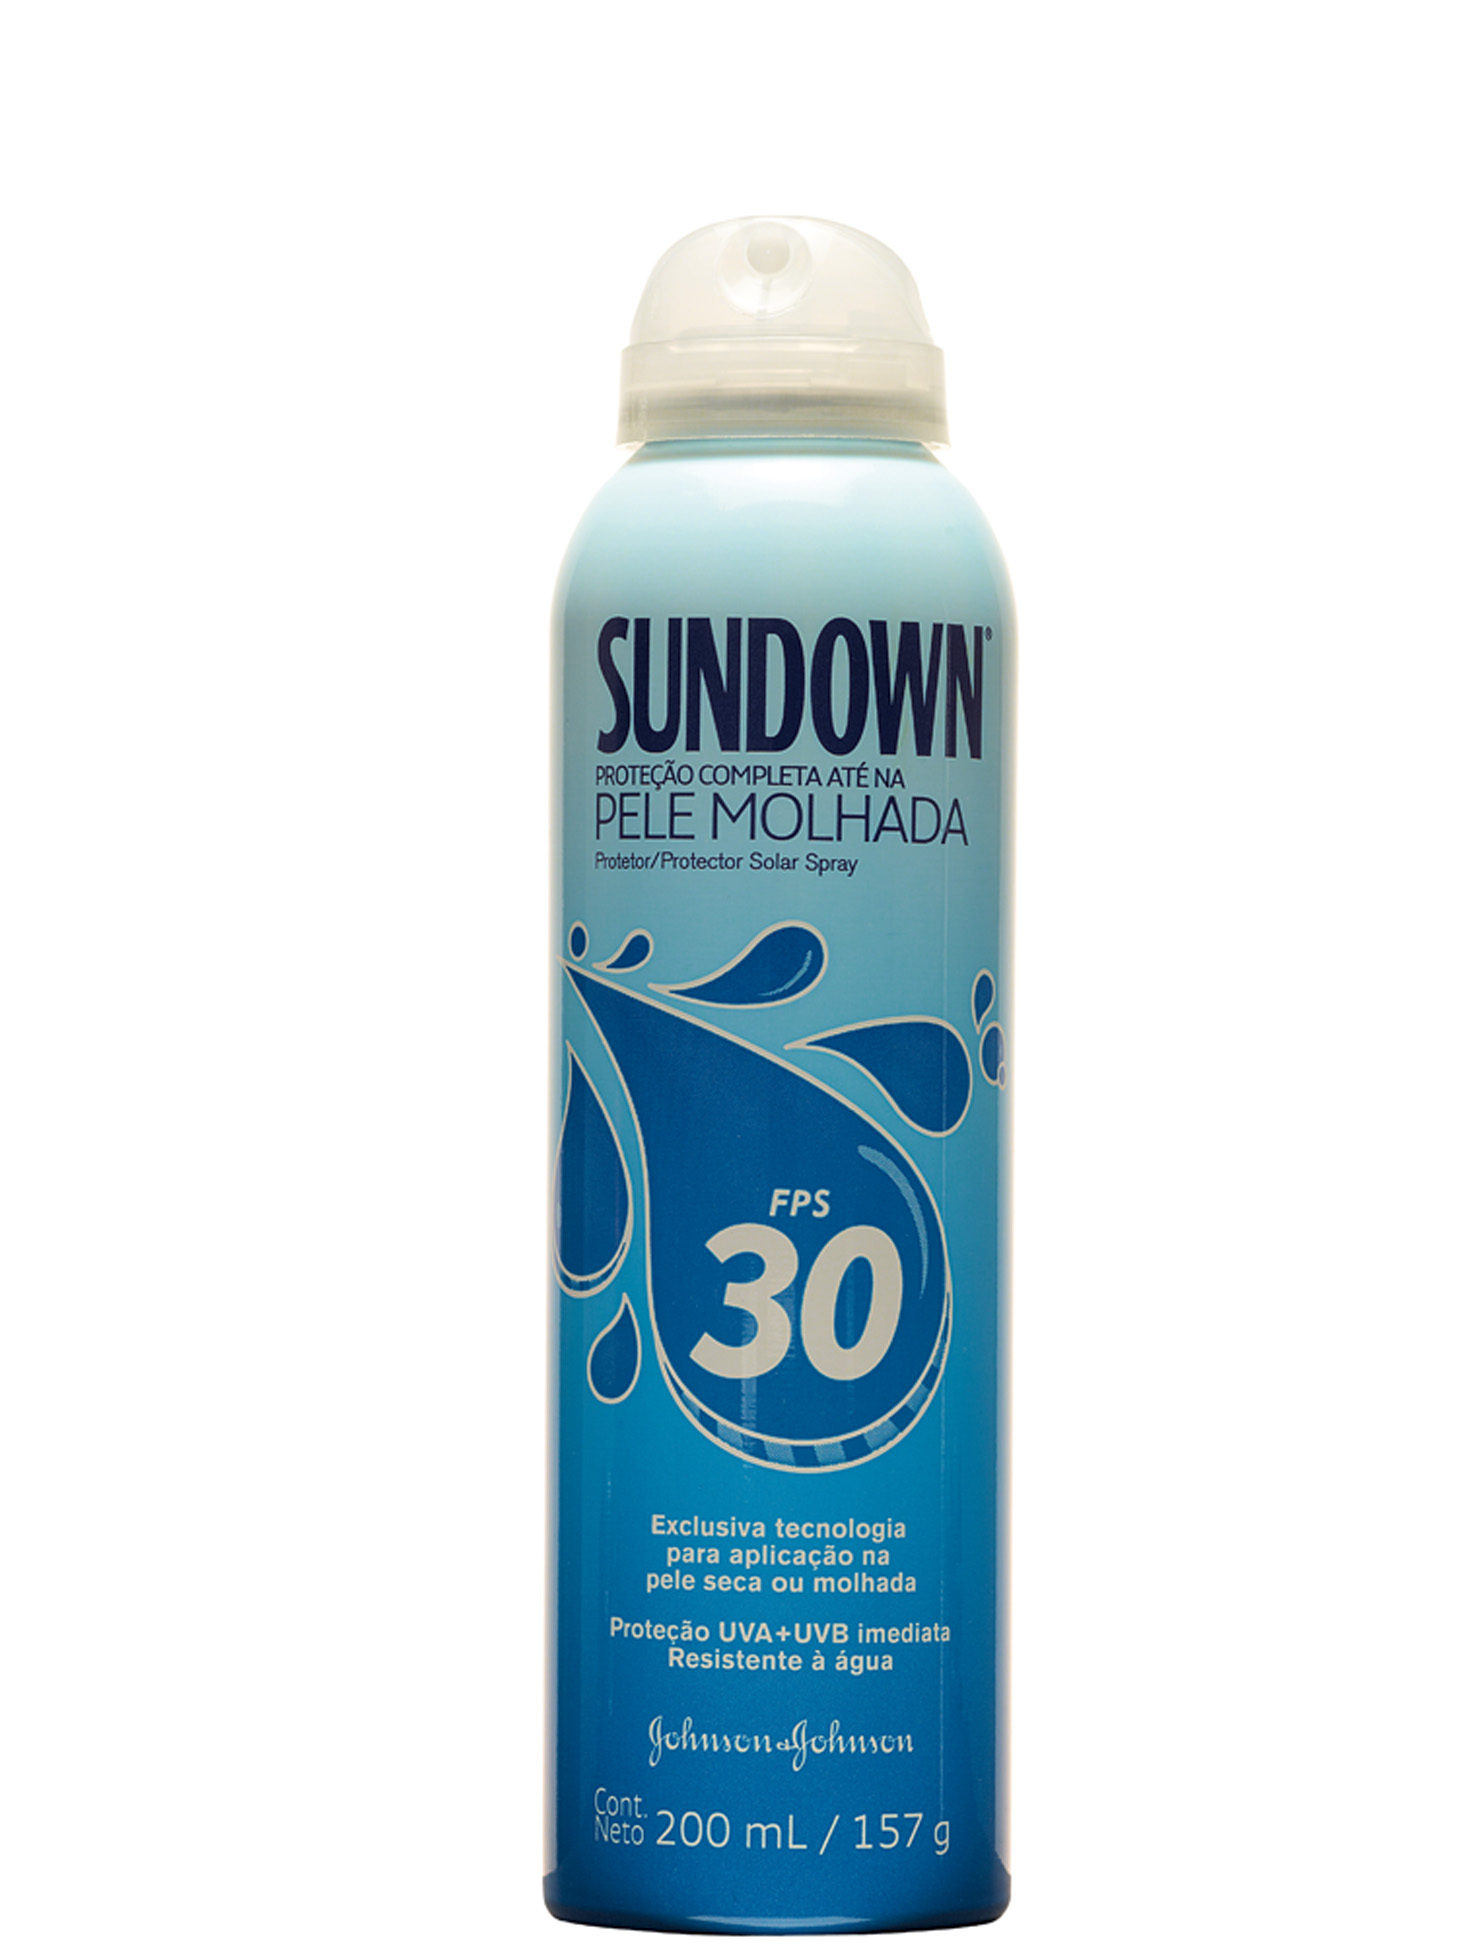 A jato  “Adoro o protetor solar em spray  da Sundown. Ele é ótimo e prático.  Uso principalmente quando vou correr”